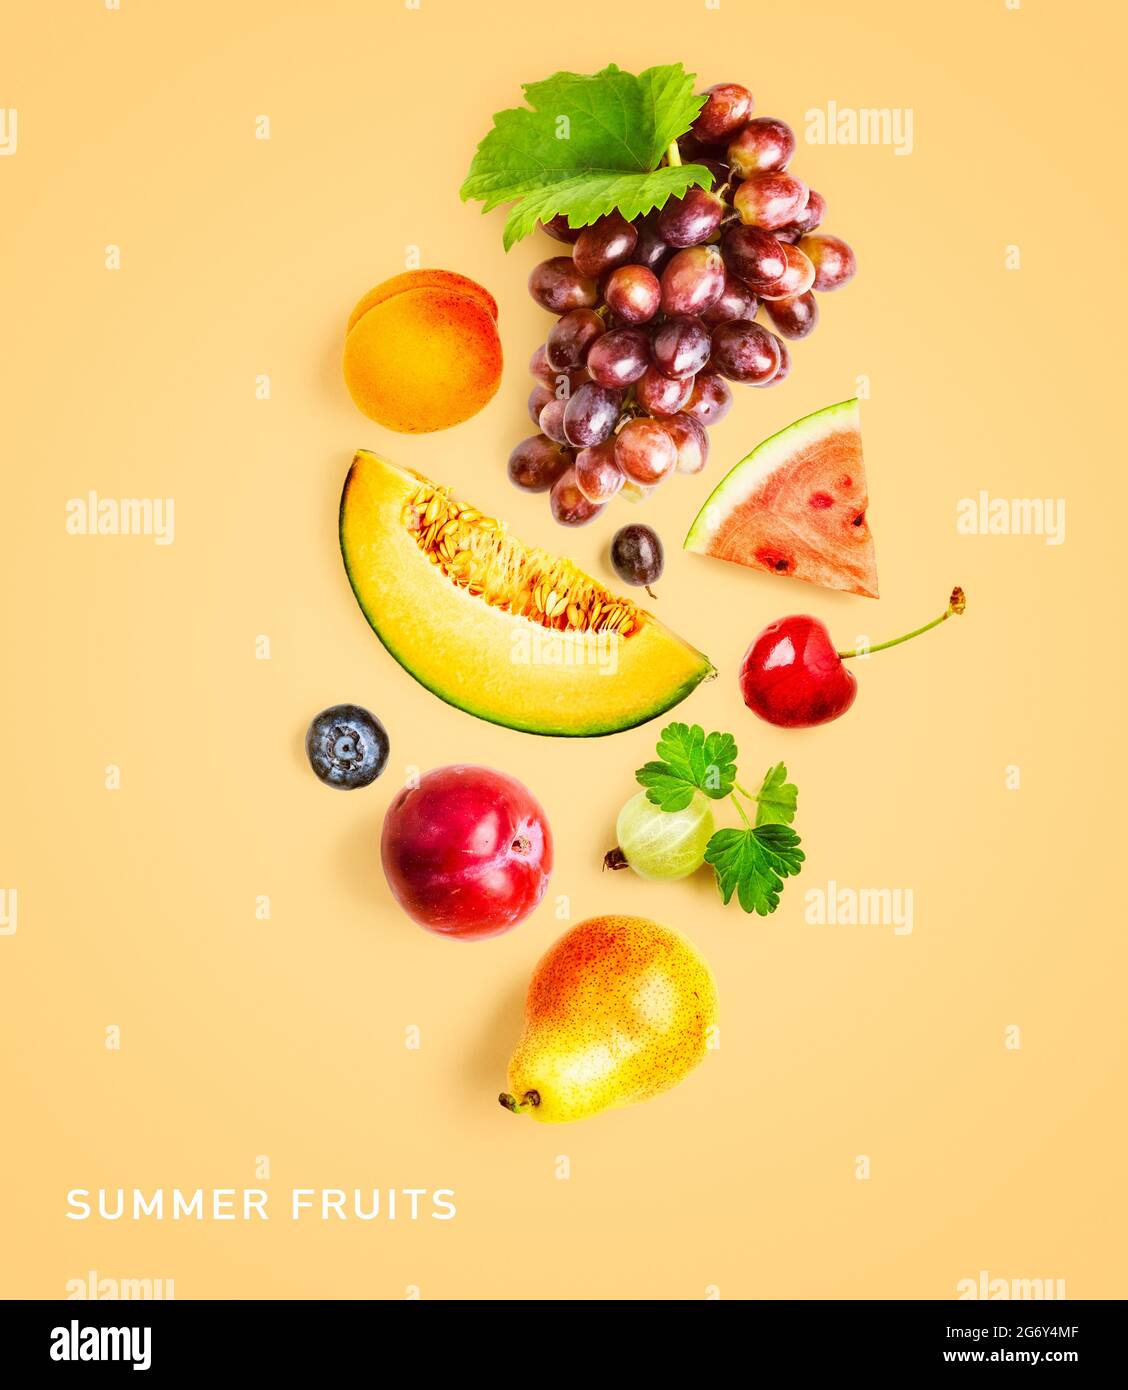 Tận hưởng mùa hè tươi trẻ với những loại trái cây ngon tuyệt trong thực đơn của chúng tôi. Vị ngọt tự nhiên và tươi sáng sẽ làm bạn thích thú và nâng cao sức khỏe. Hãy cùng khám phá hương vị của trái cây mùa hè bằng hình ảnh đầy sức sống này. 